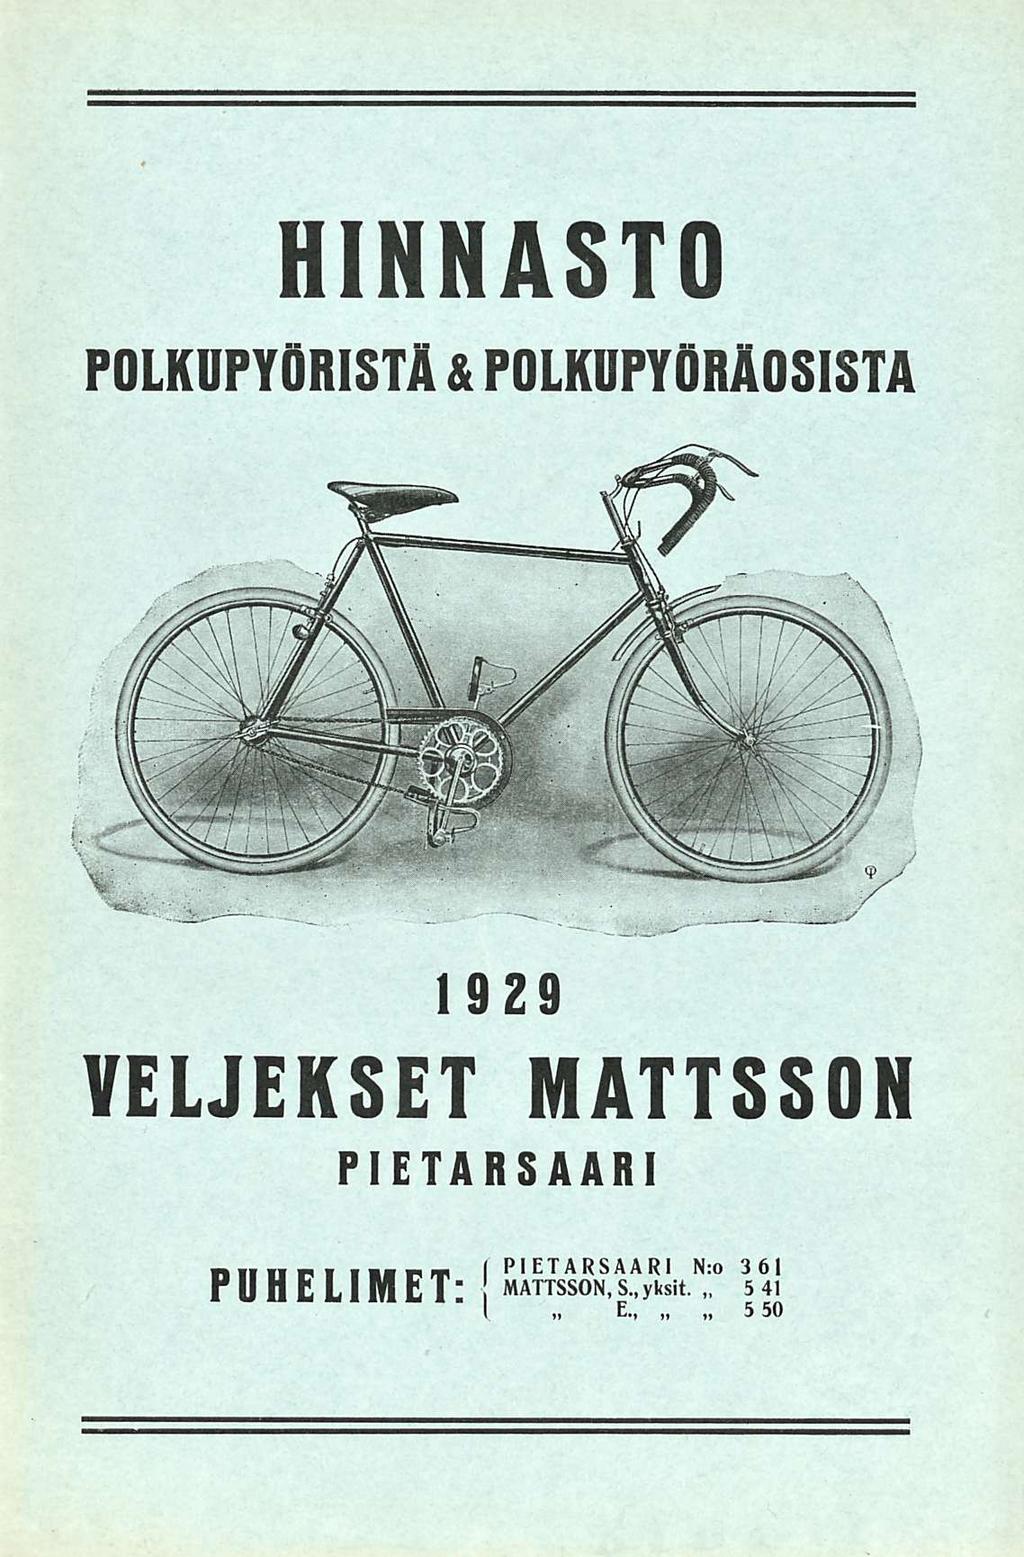 5 HINNASTO POLKUPYÖRISTÄ & POLKUPYÖRÄOSISTA 1929 VELJEKSET MATTSSON